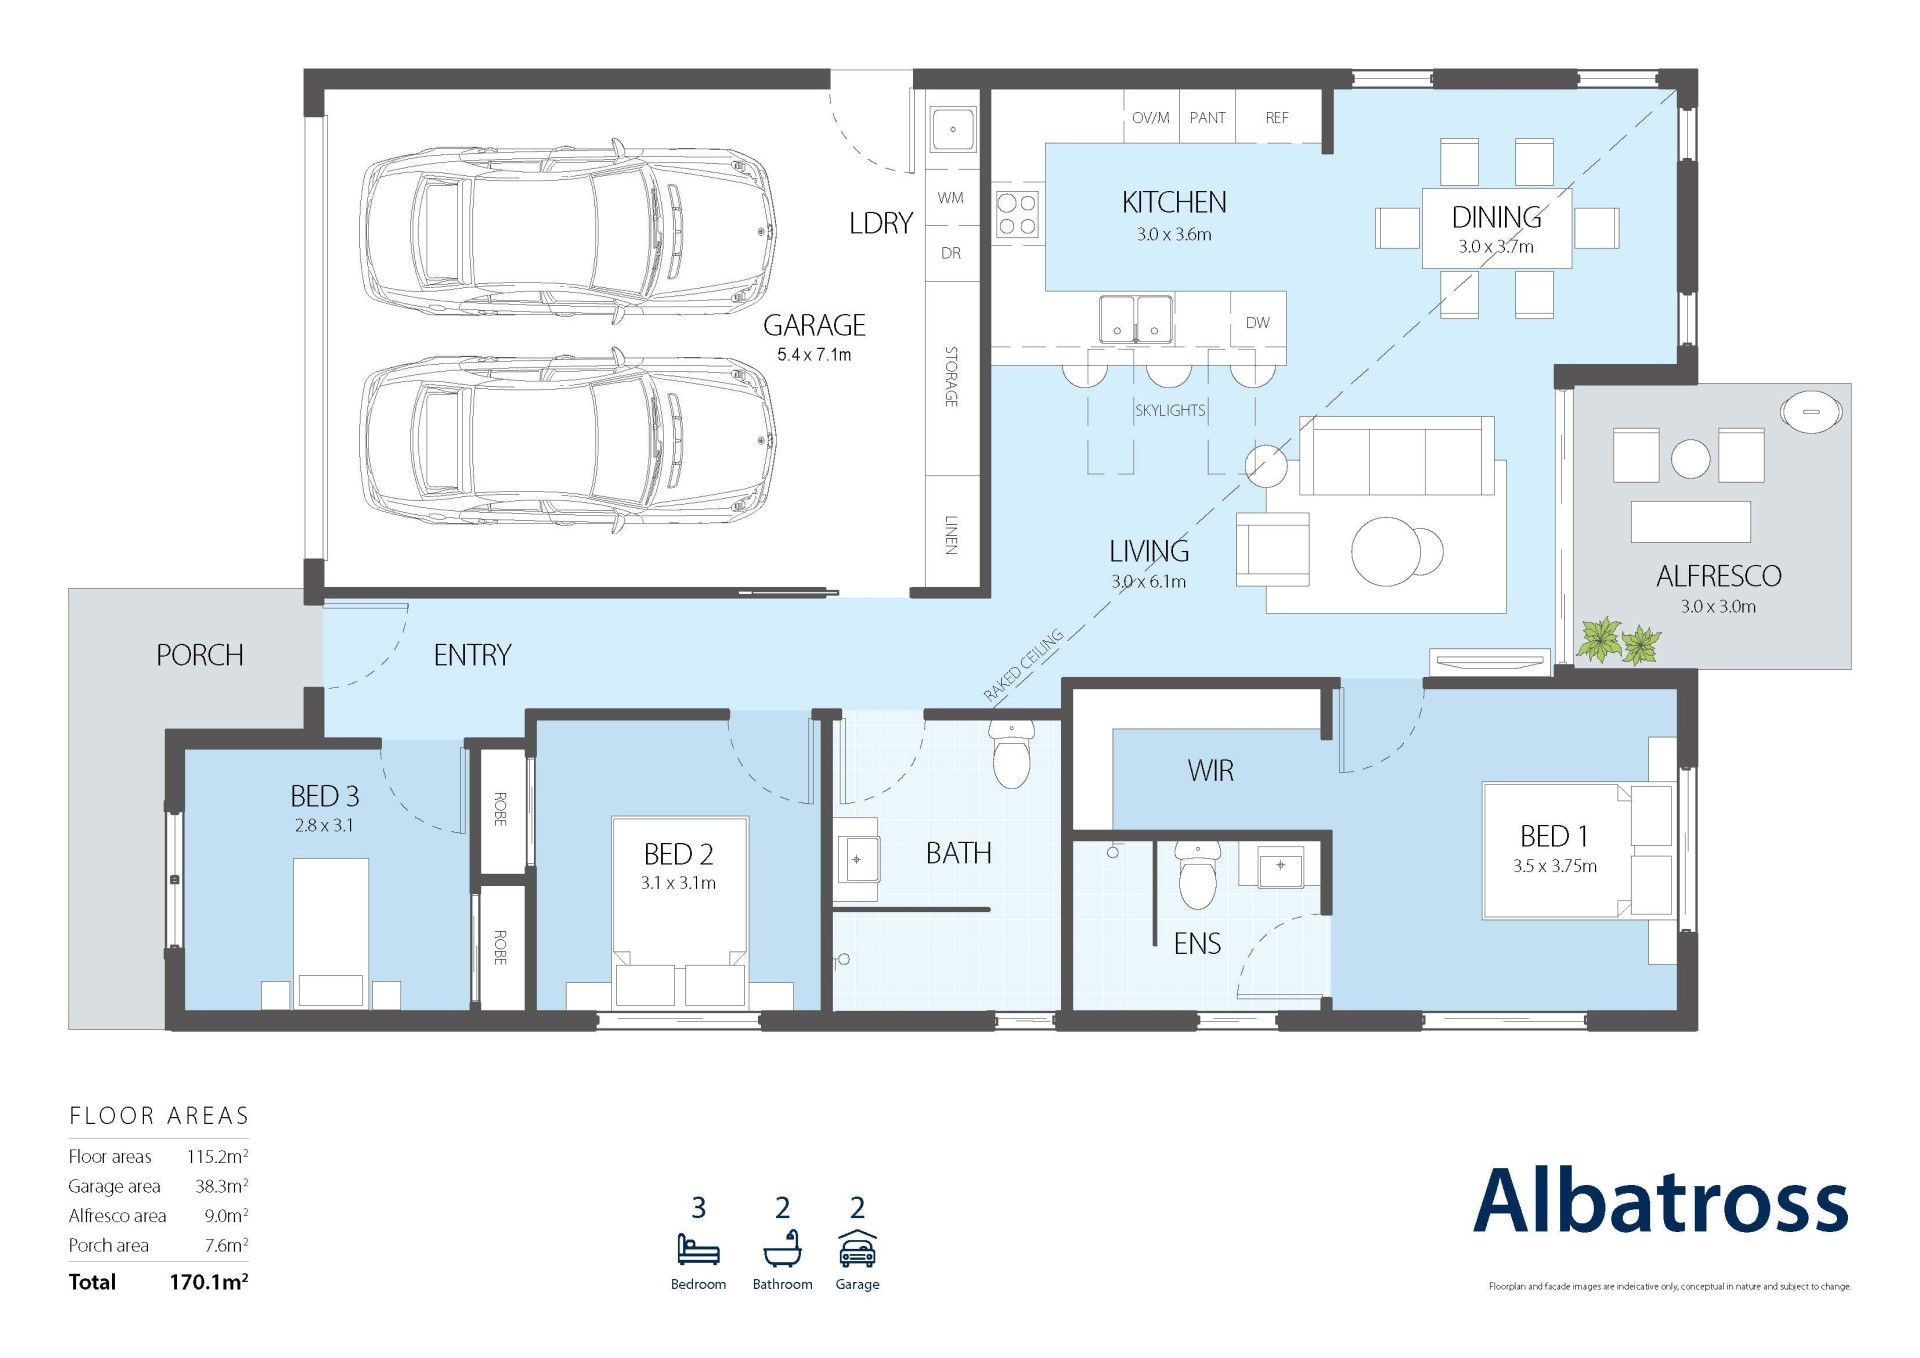 Albatross Retirement Home Floor Plan